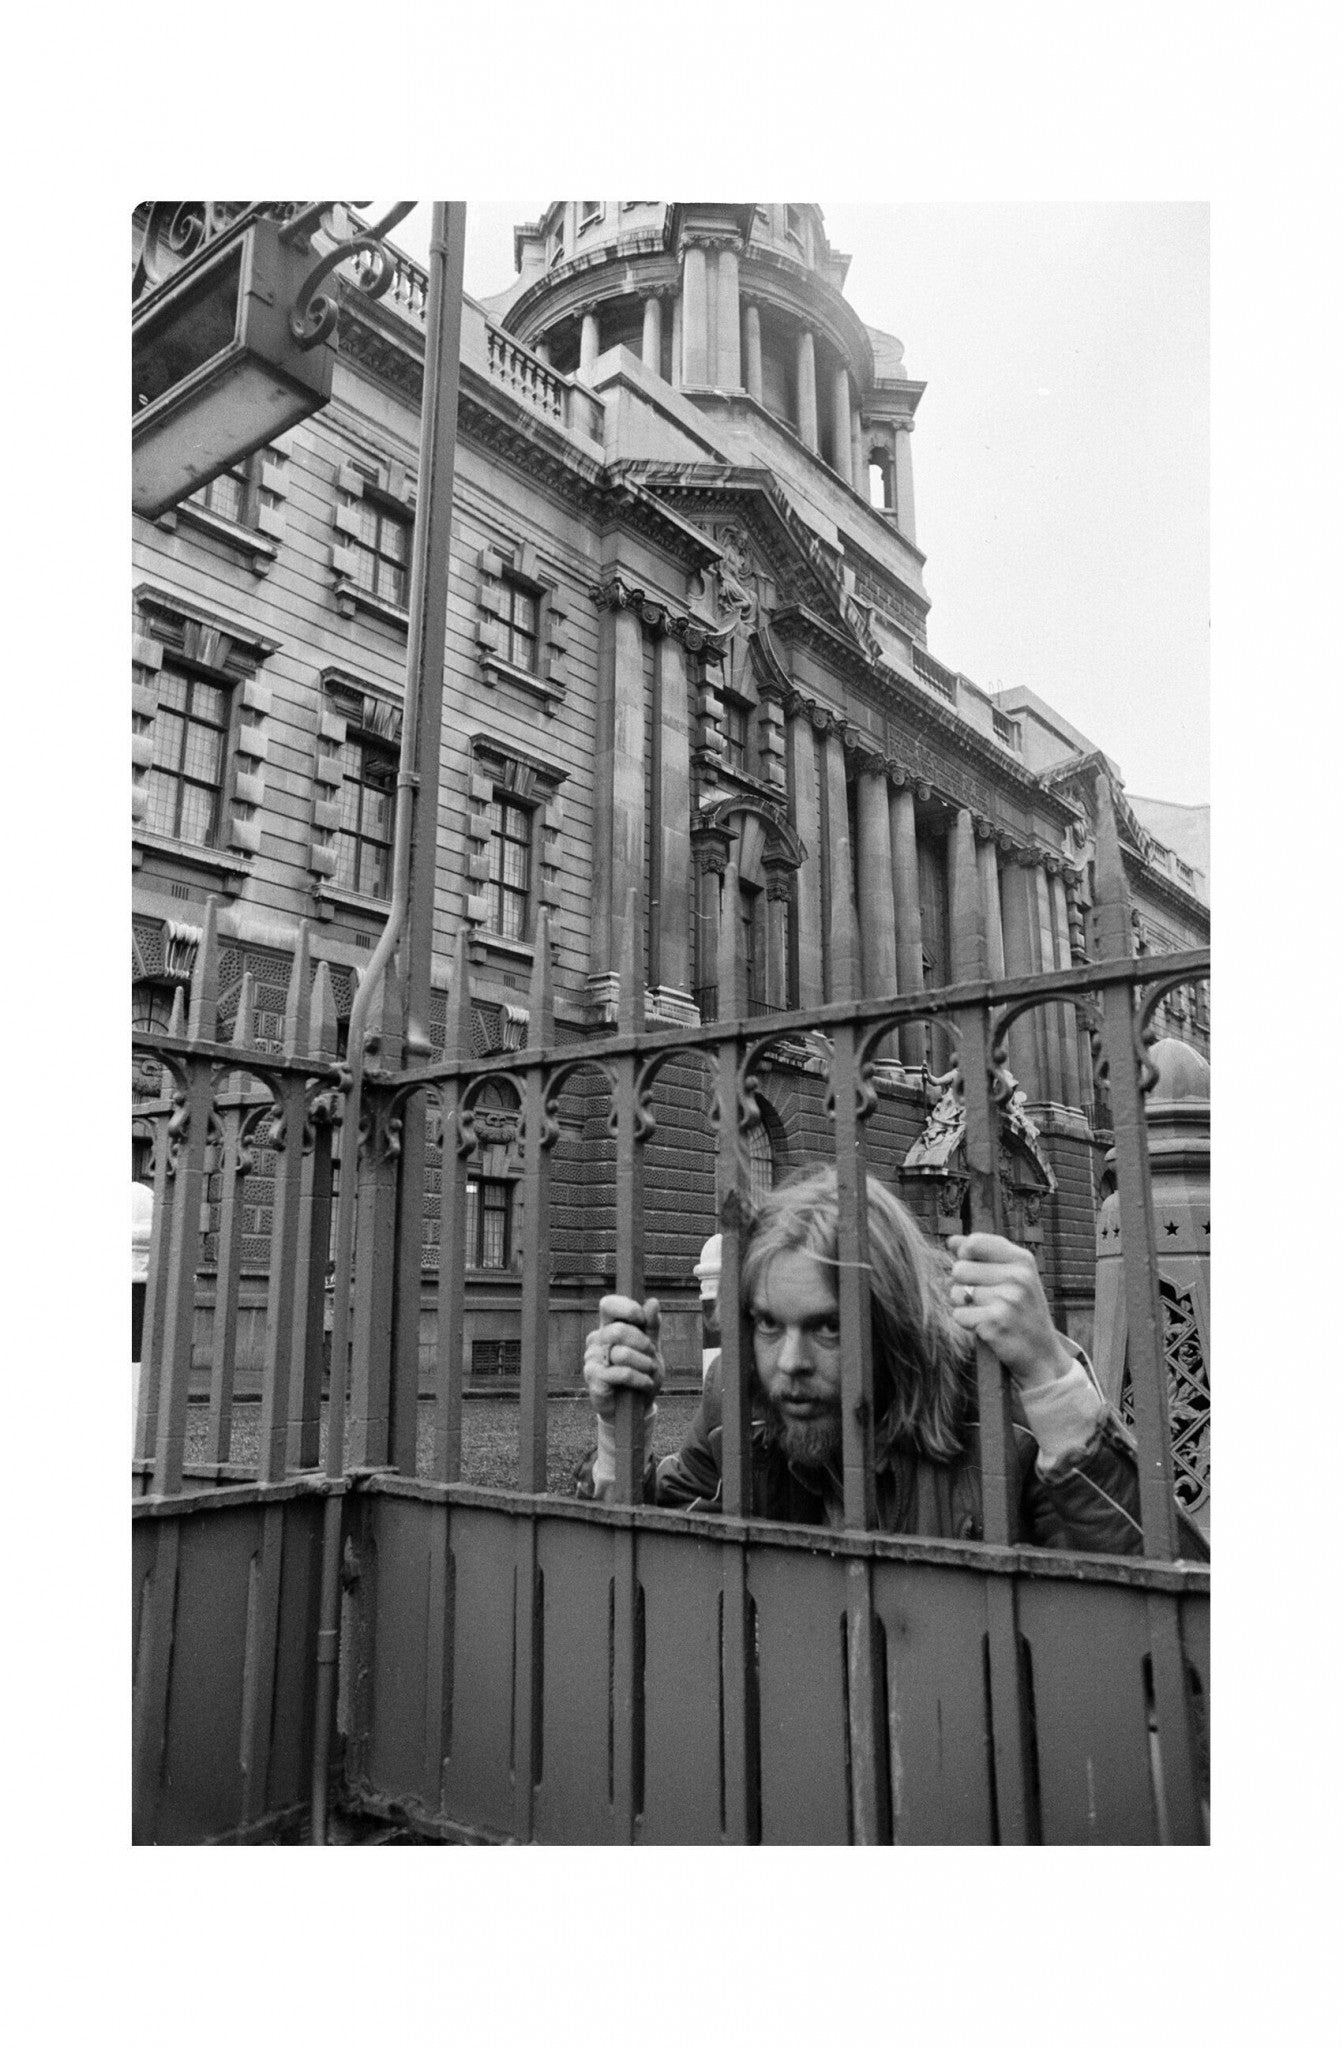 Rick Wakeman - Behind Bars at the Old Bailey, England, 1977 Print (2/2)